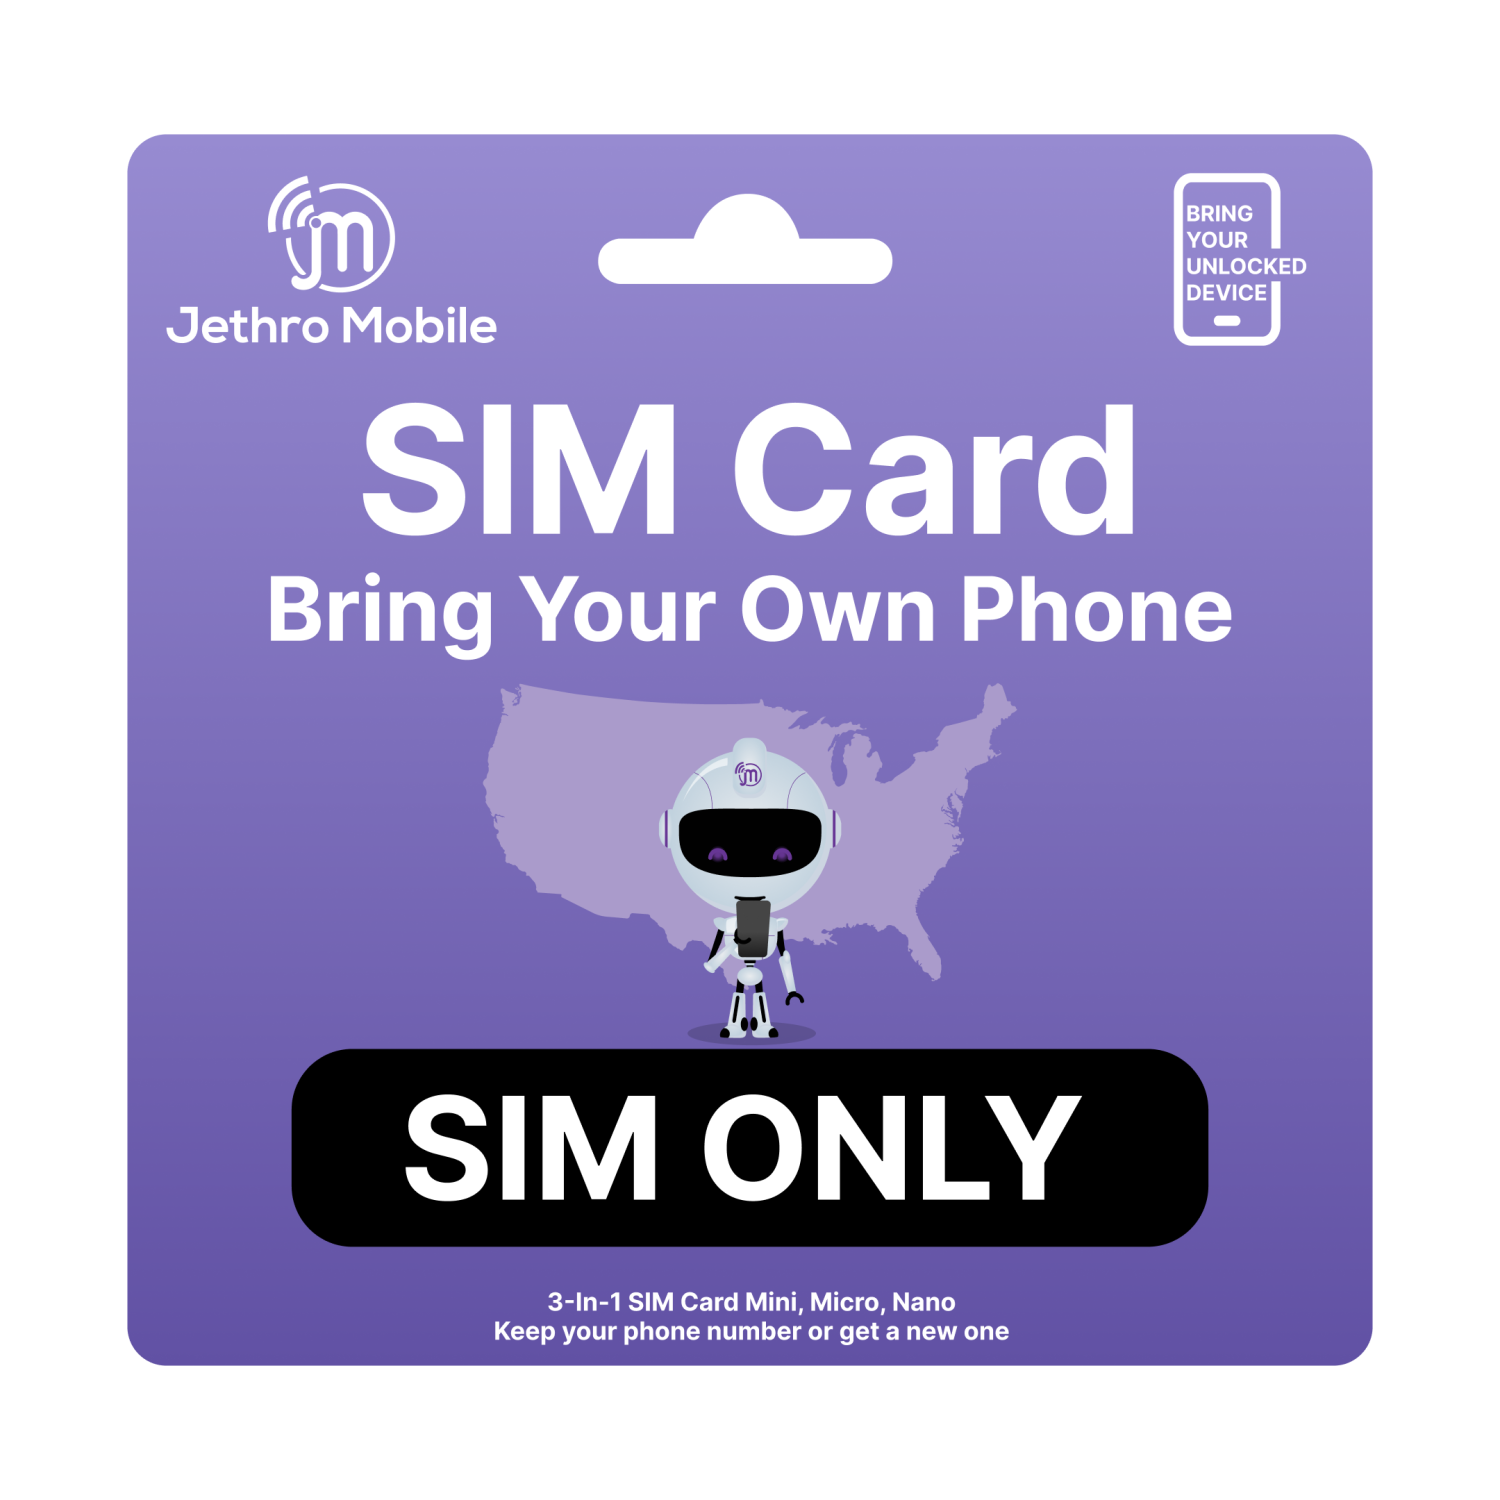 Jethro Mobile USA 5G/4G LTE Tri-Cut SIM Card - Nano Micro Standard 3 in 1 Combo Size